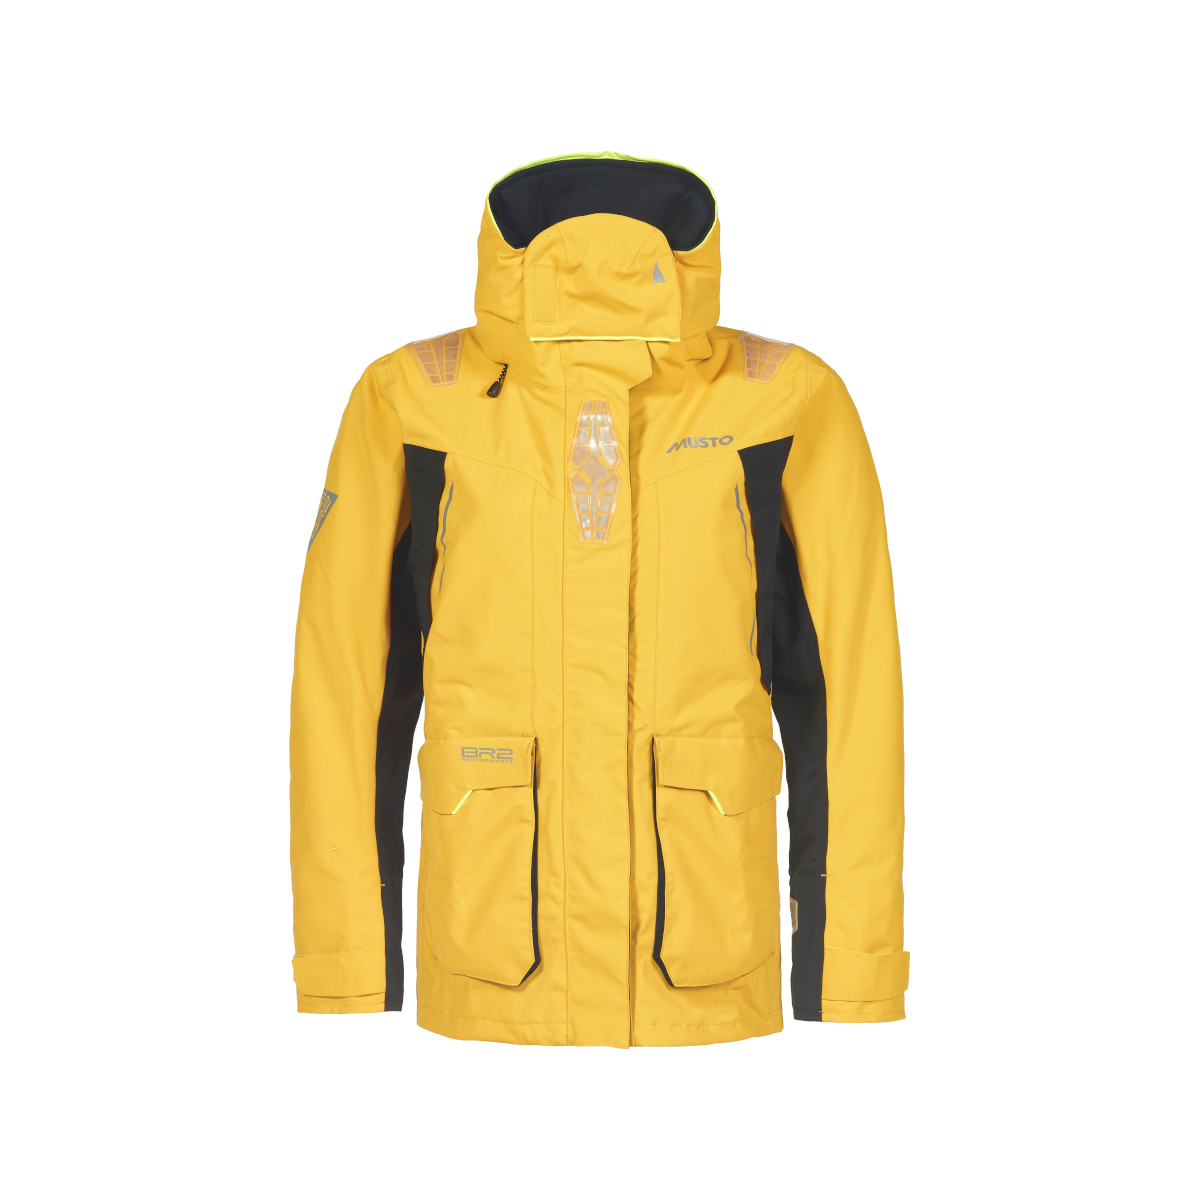 Musto BR2 veste de voile Offshore 2.0 femme jaune, taille 10